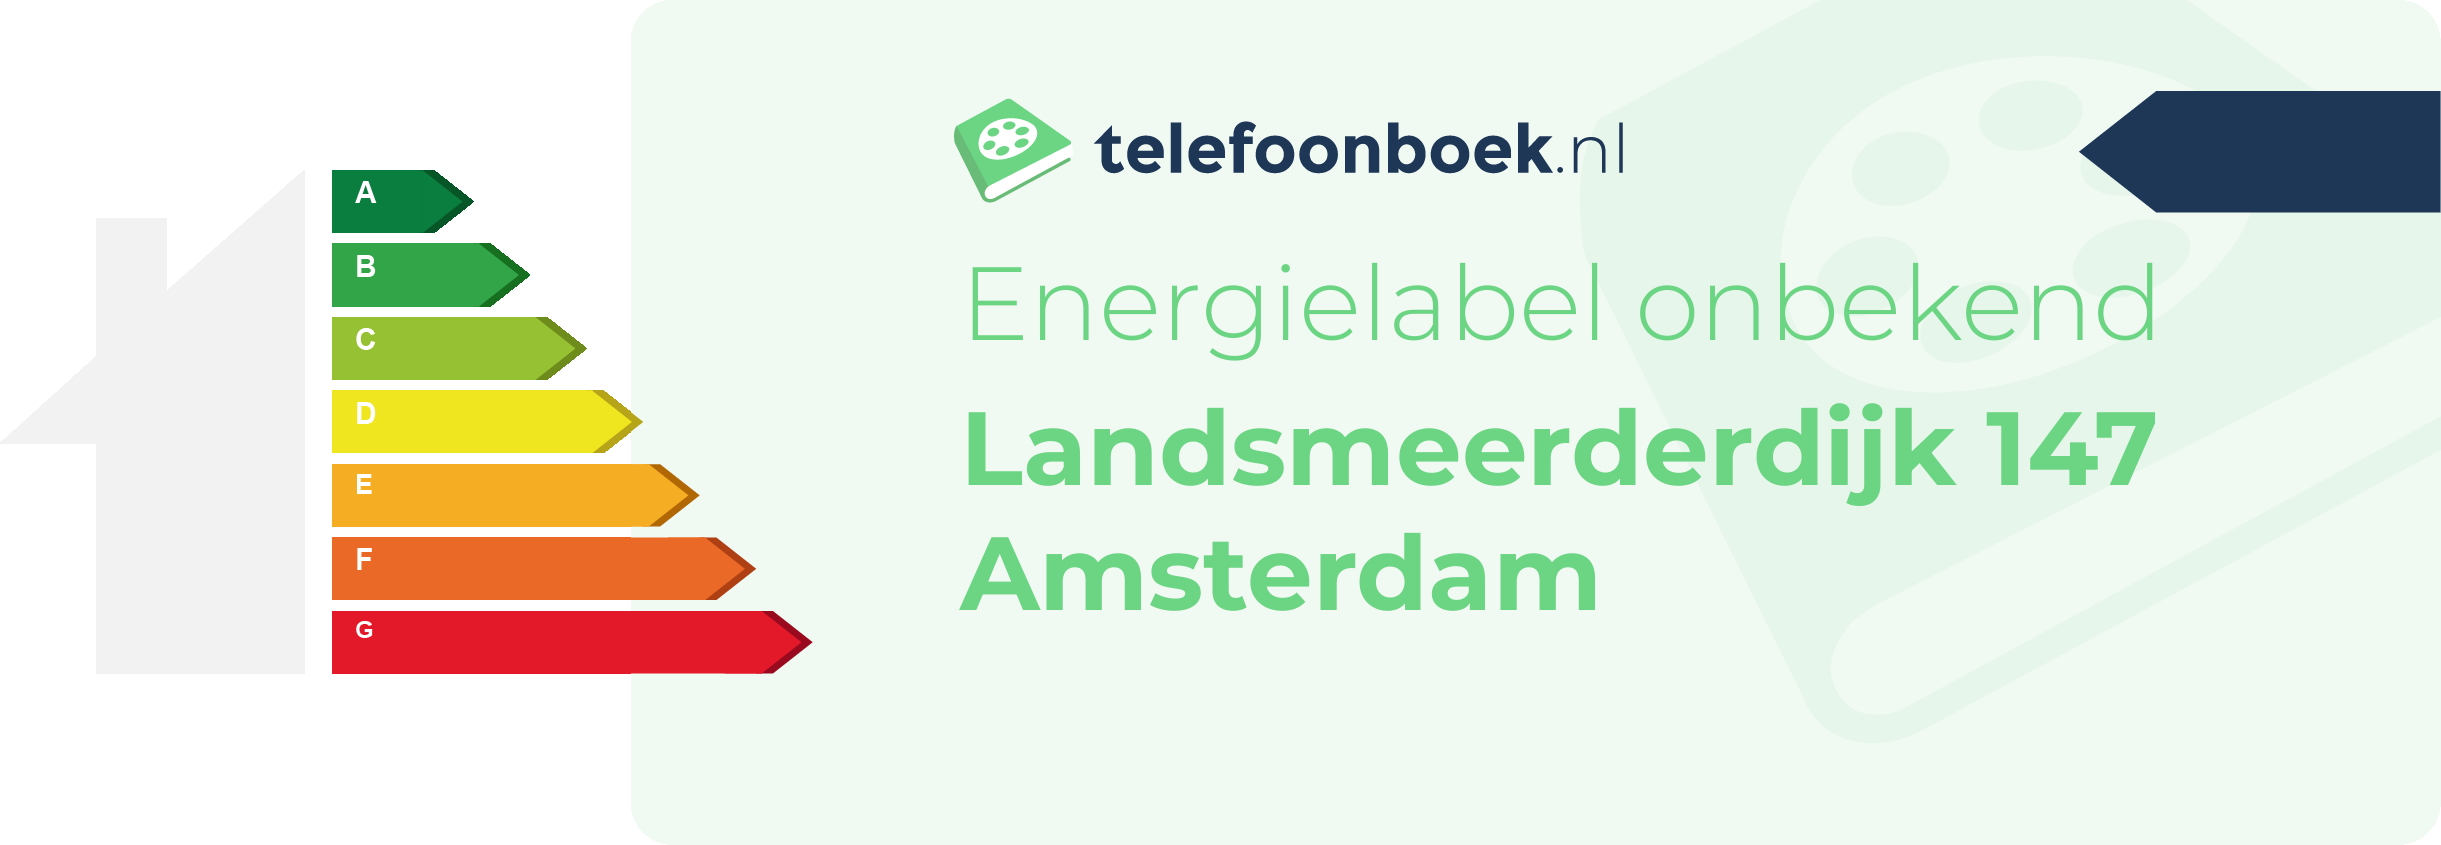 Energielabel Landsmeerderdijk 147 Amsterdam